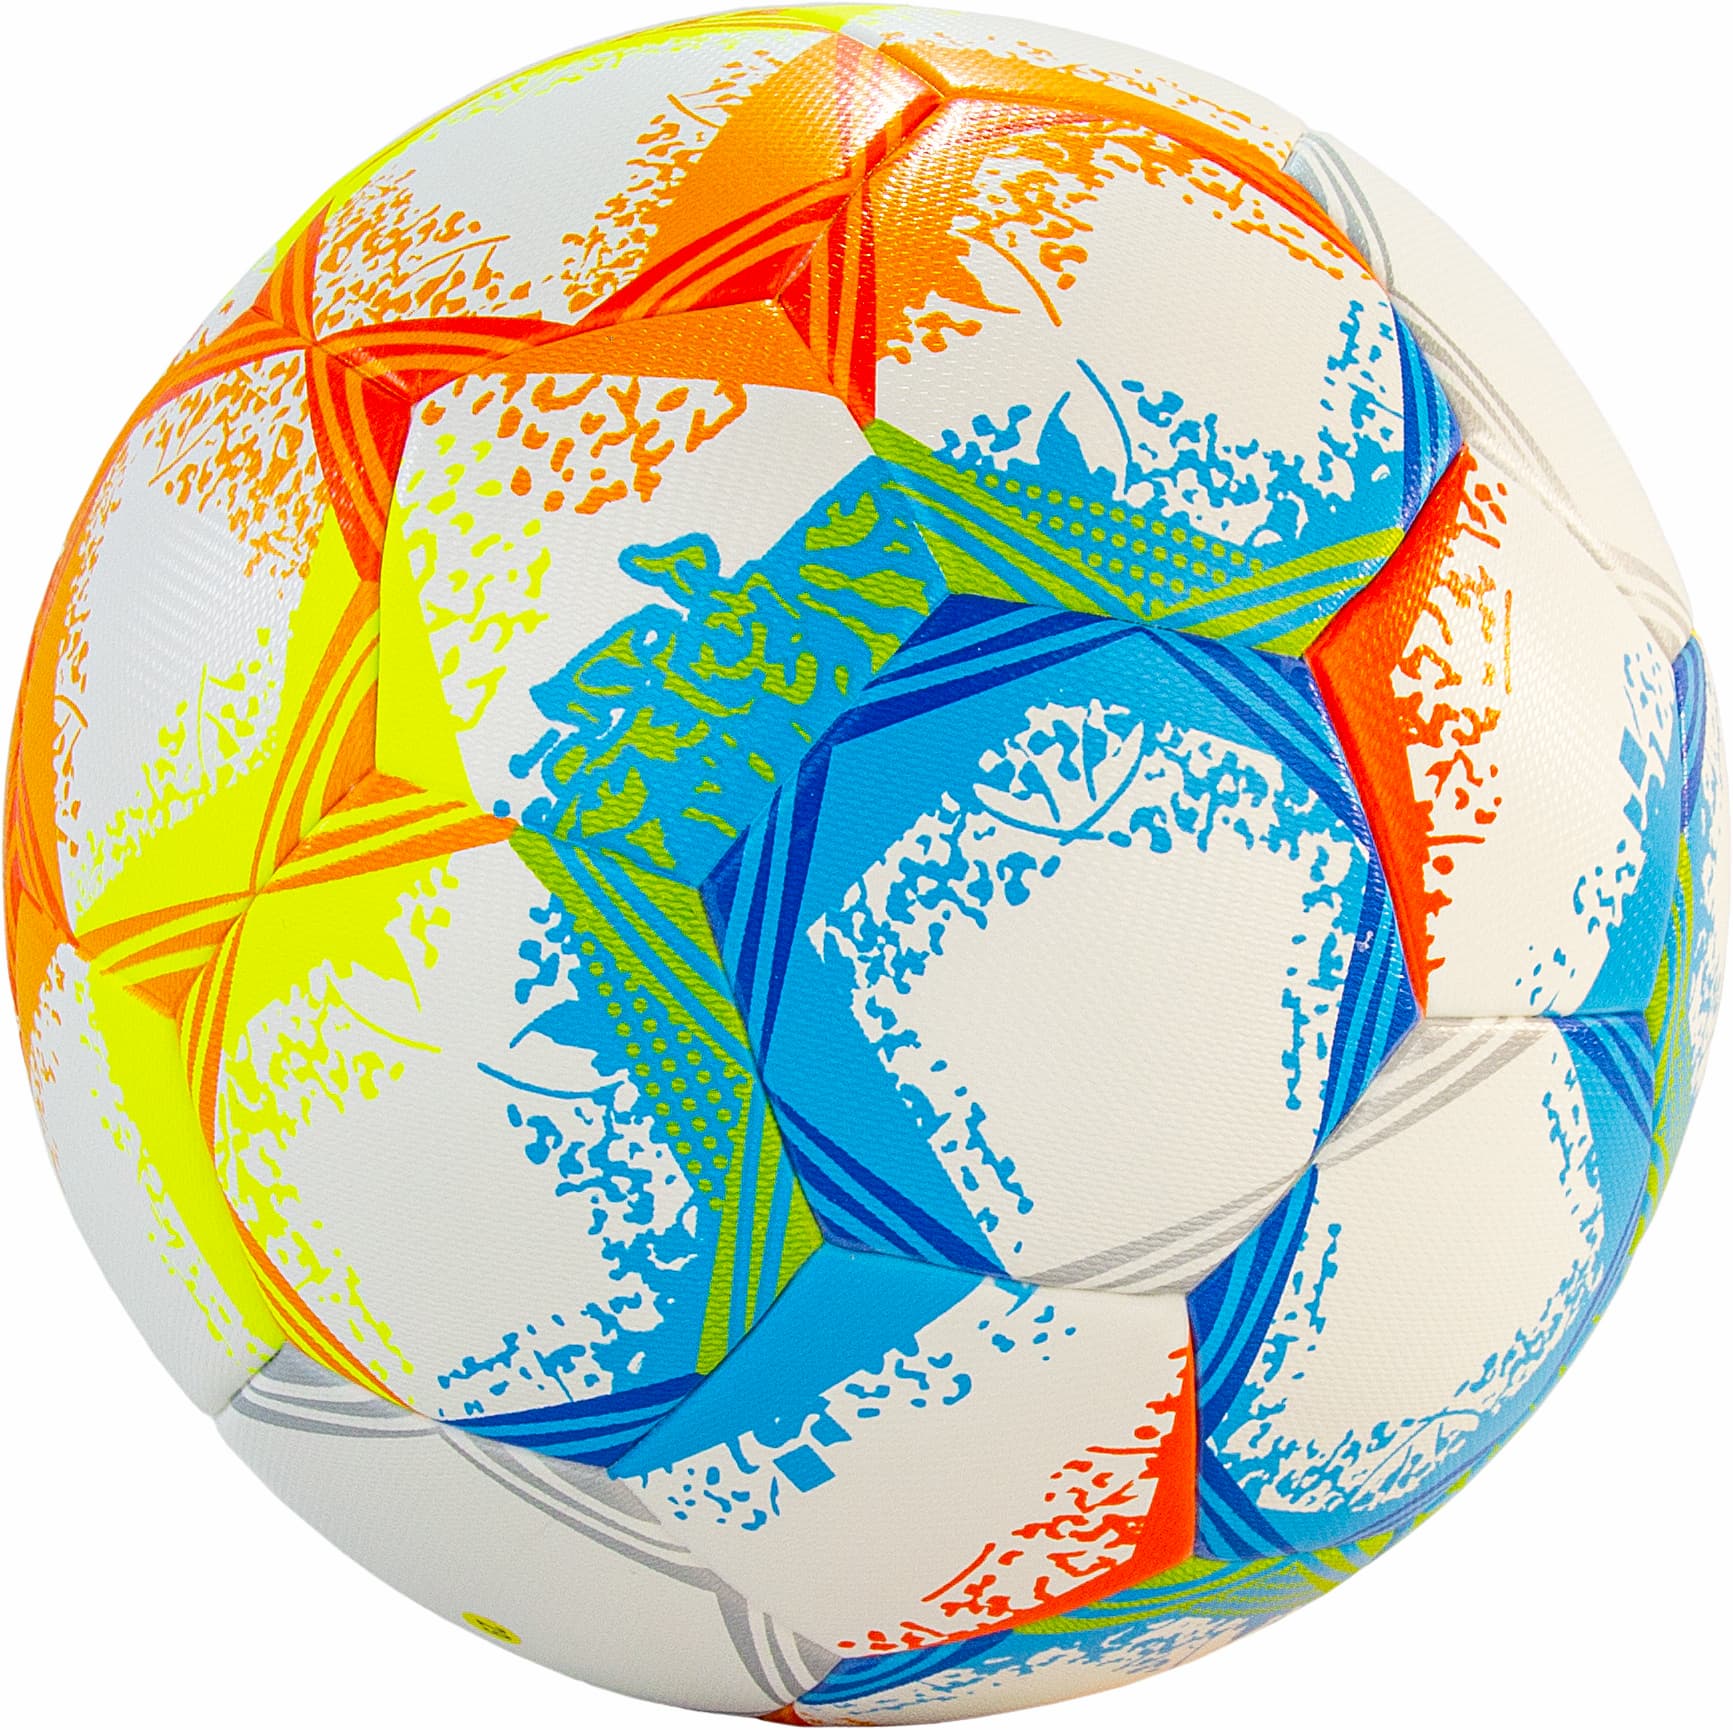 Футбольный мяч профессиональный DERBYSTAR «Bundesliga» размер 5, CX-0059 / Белый